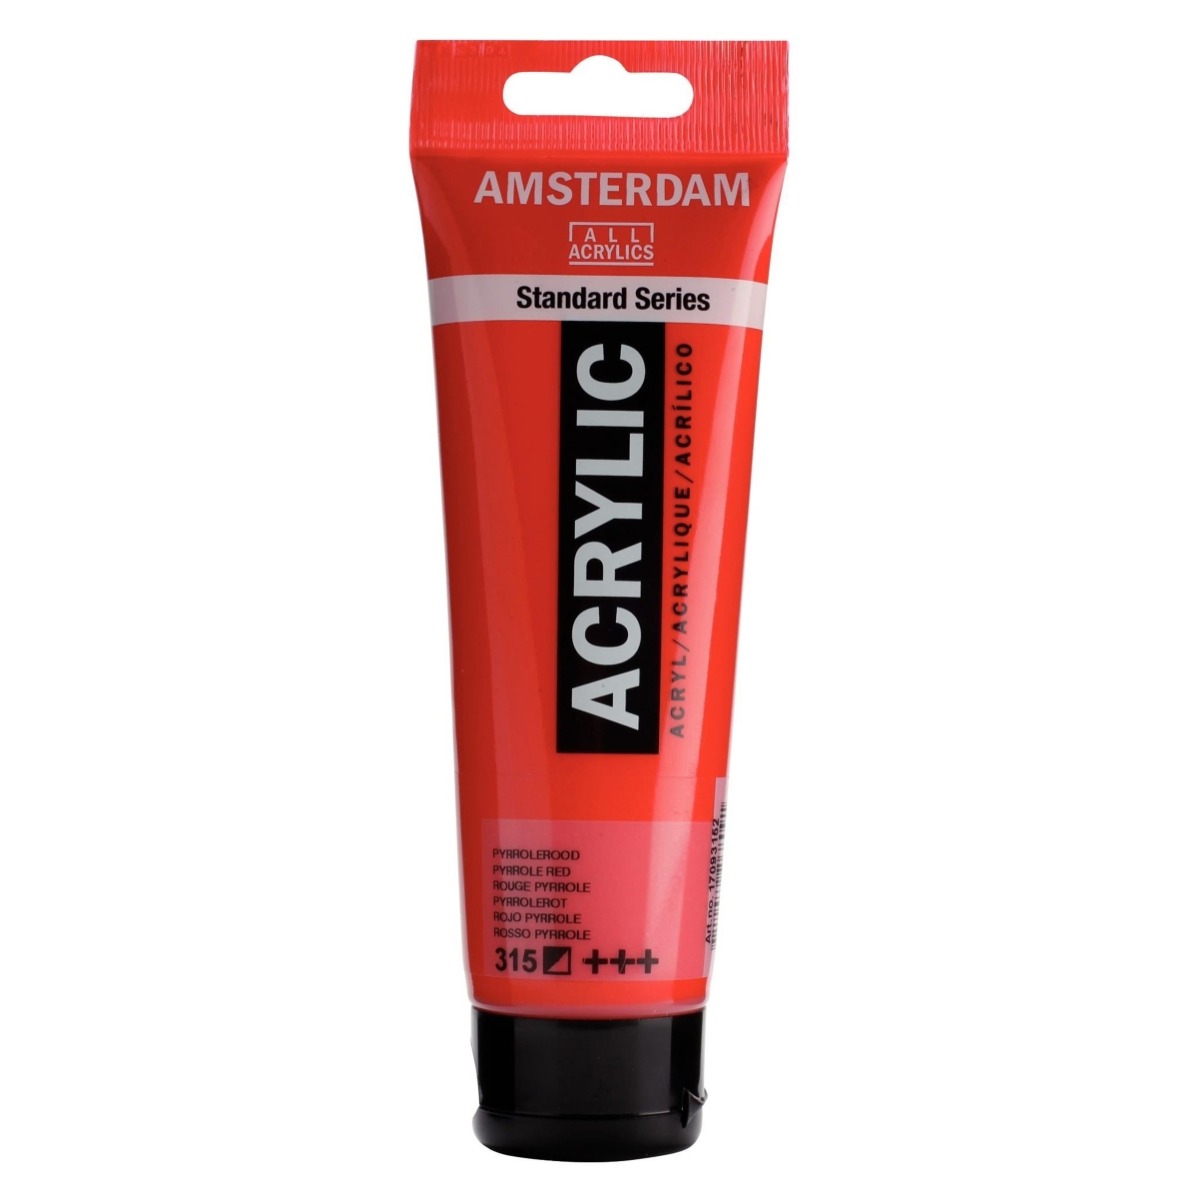 Acrilic Standard 120ml Amsterdam rosu pirol 17093152